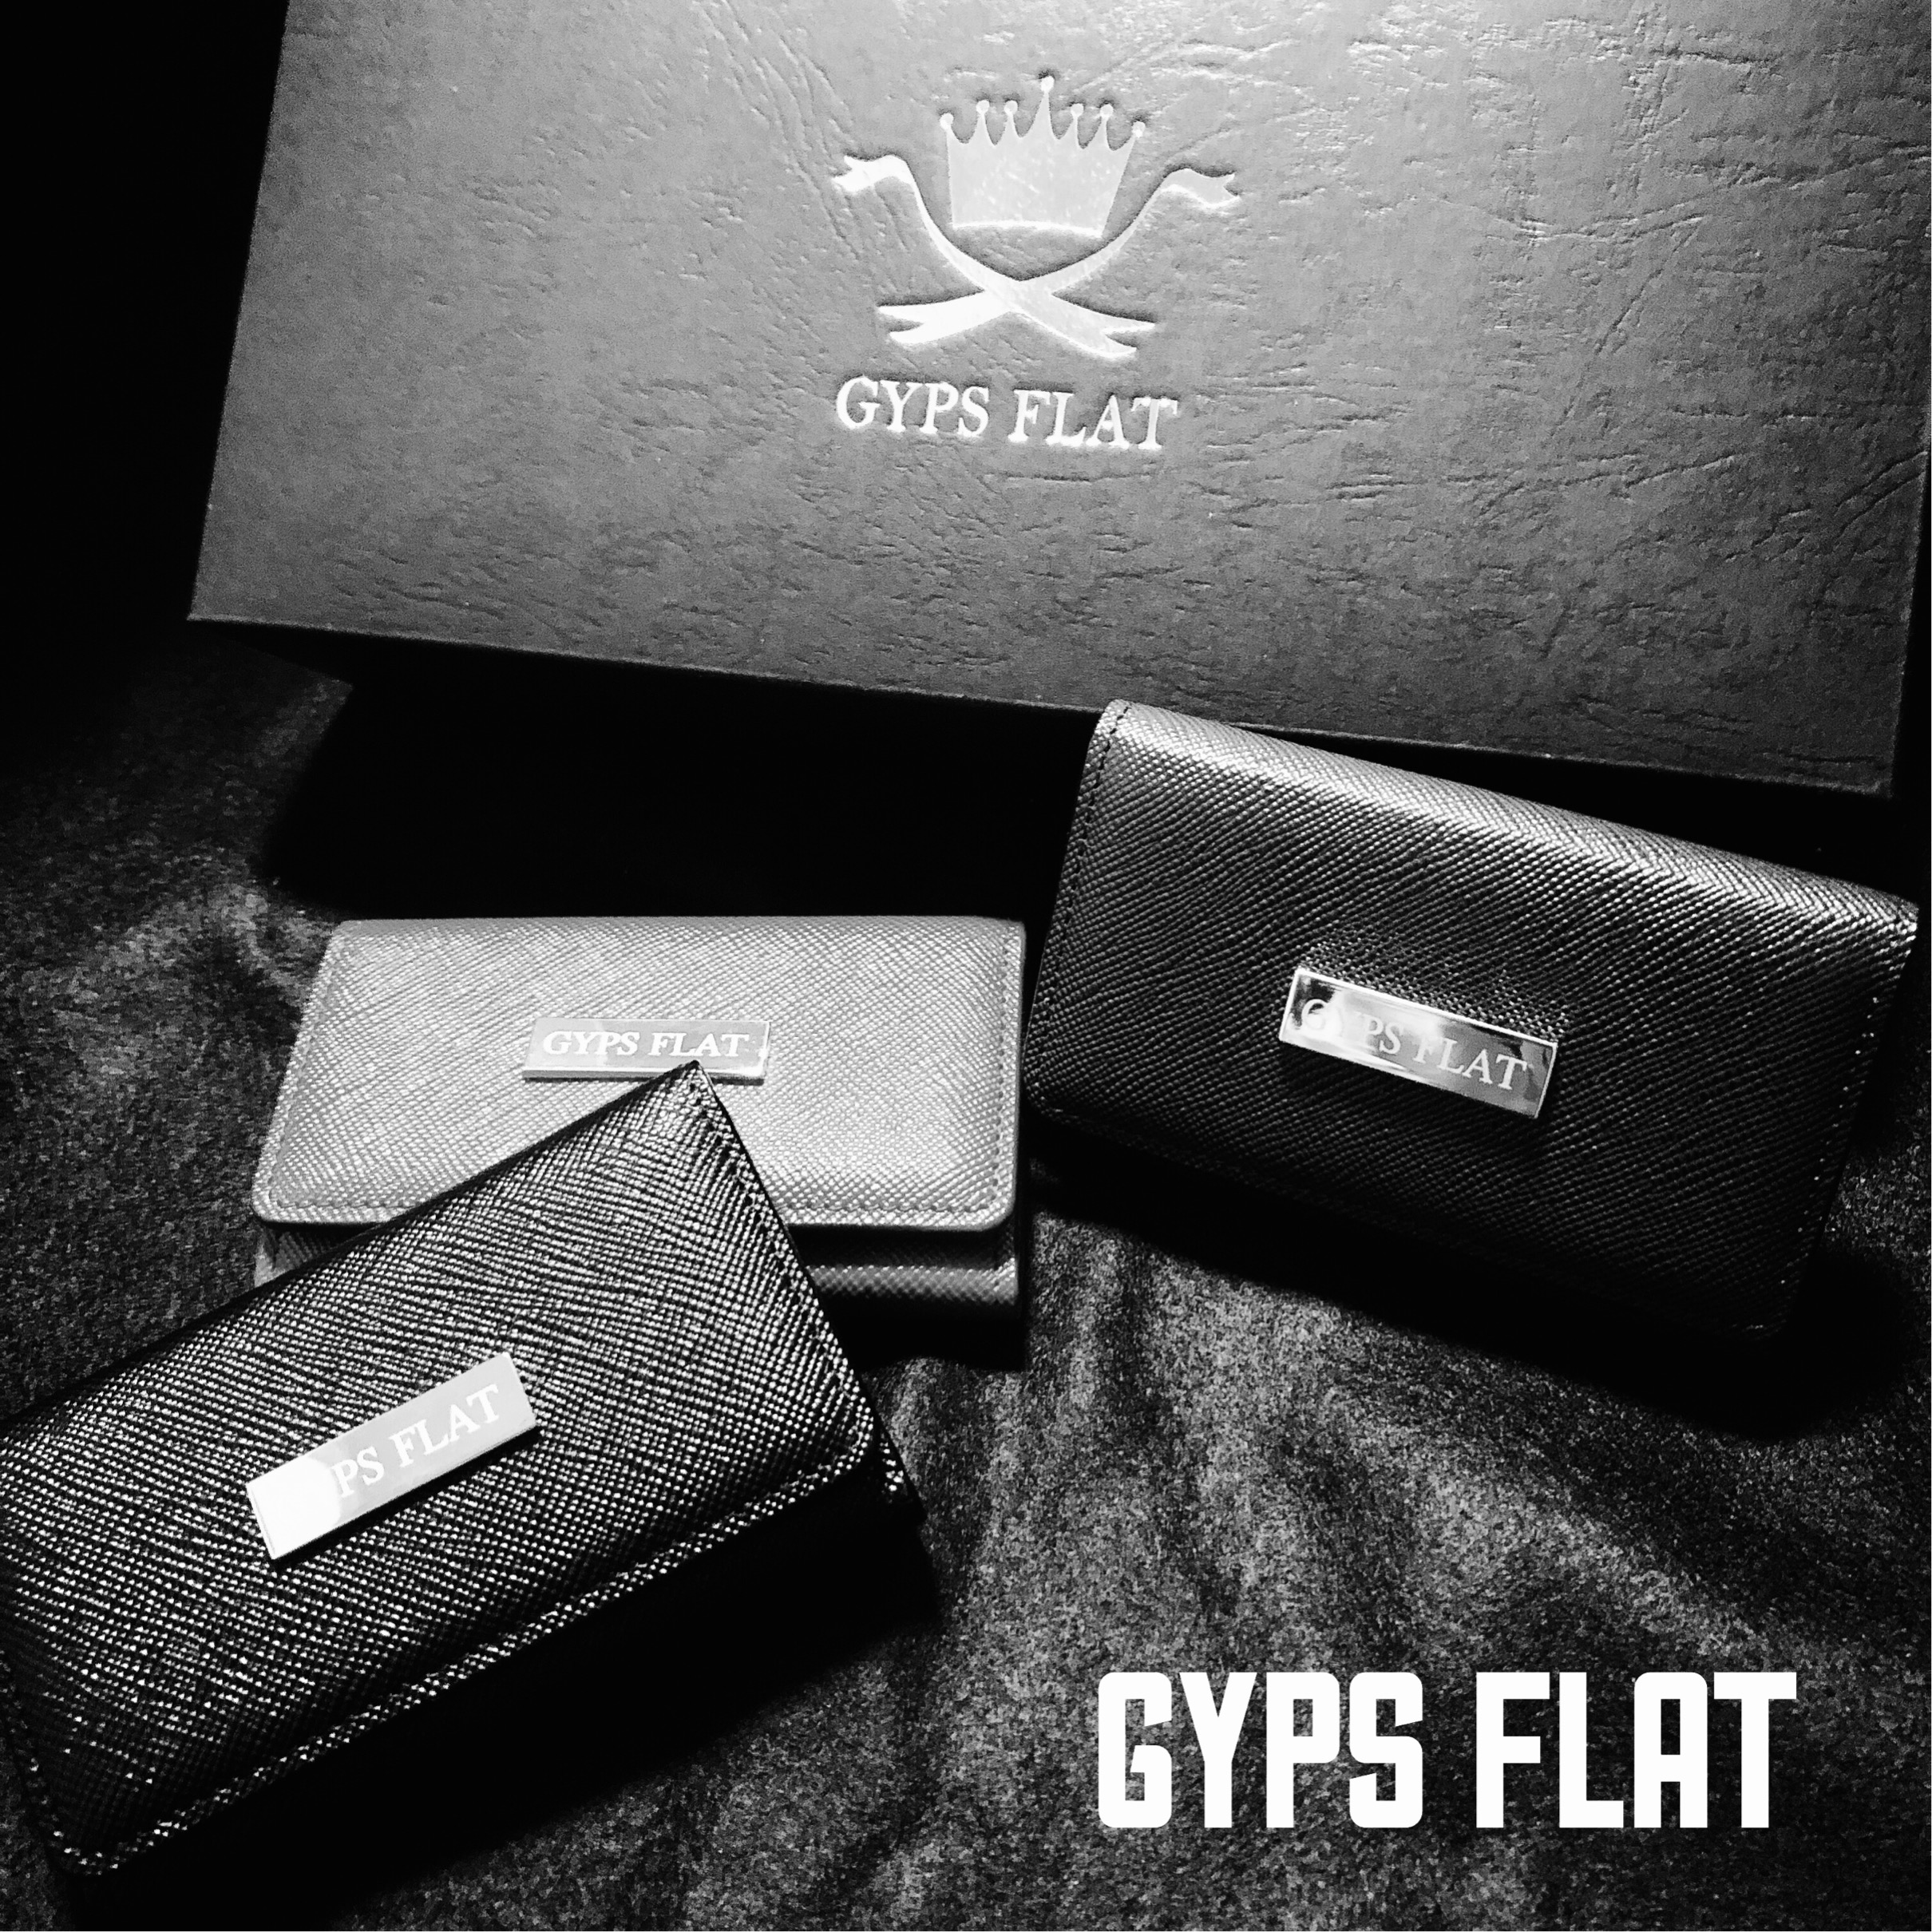 GYPS FLATの新商品について